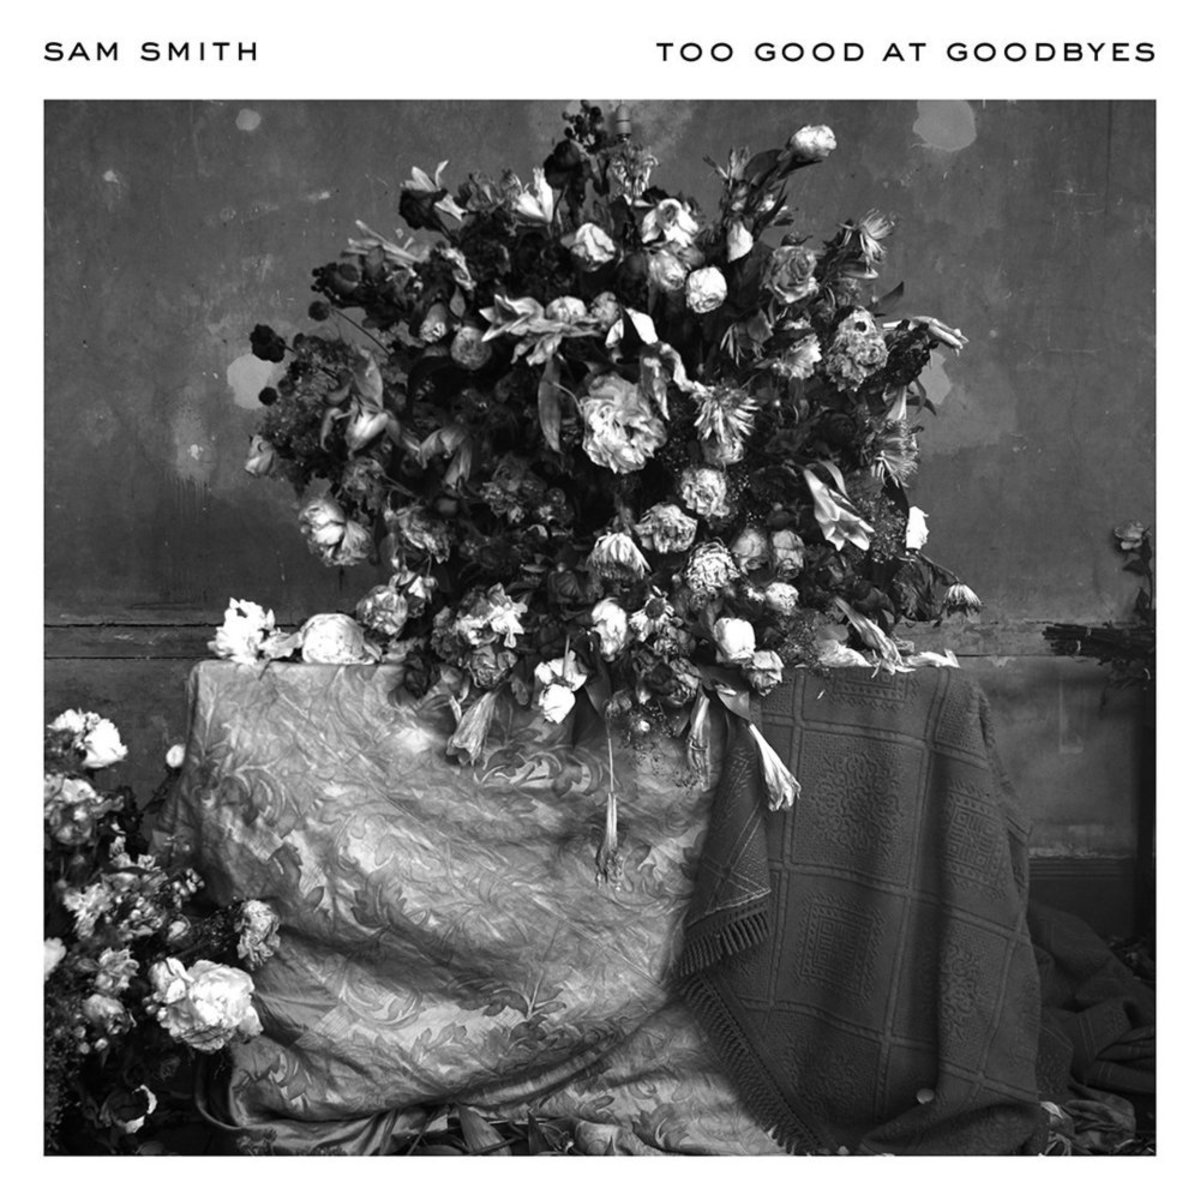 Sam Smith: "Too Good at Goodbyes"